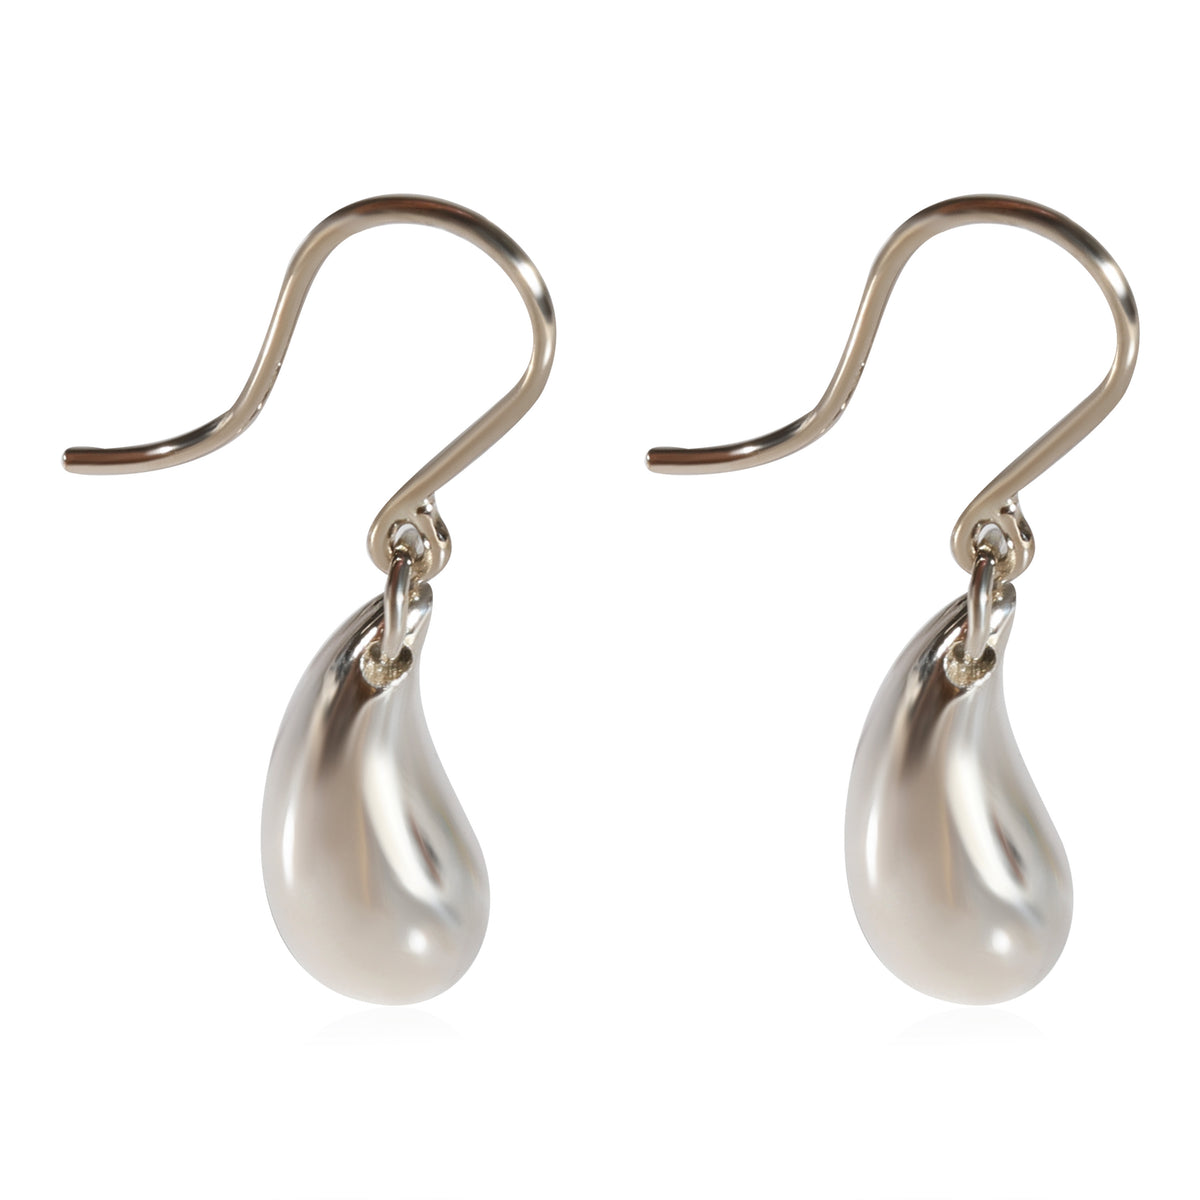 Tiffany & Co. Elsa Peretti Teardrop Earrings in 925 Sterling Silver